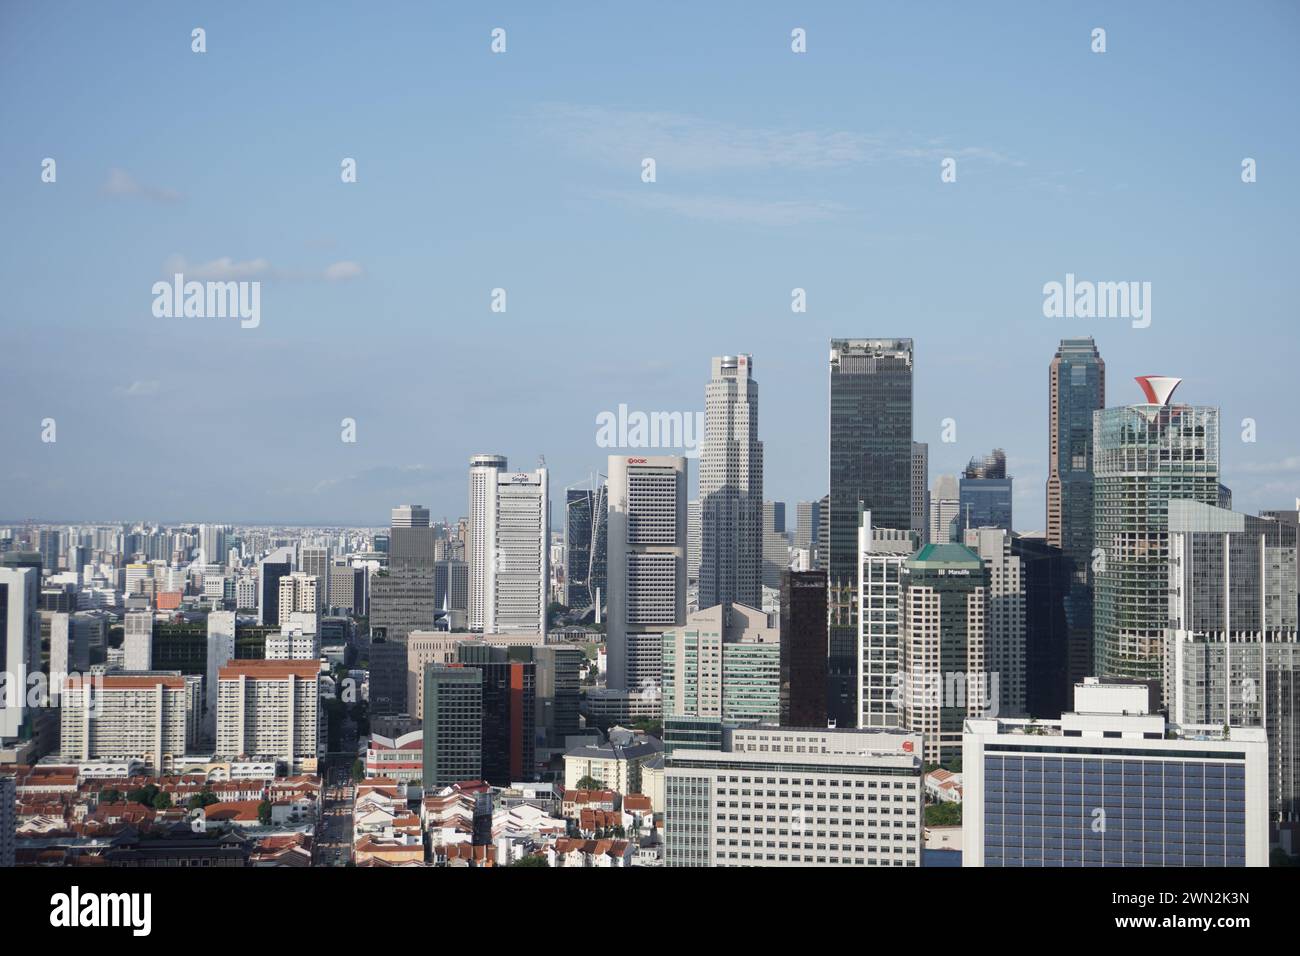 Il CBD di Singapore, un centro finanziario globale, ospita edifici prestigiosi come Plus Building al 20 Cecil Street, 049705, emblematico dei suoi traffici affari Foto Stock